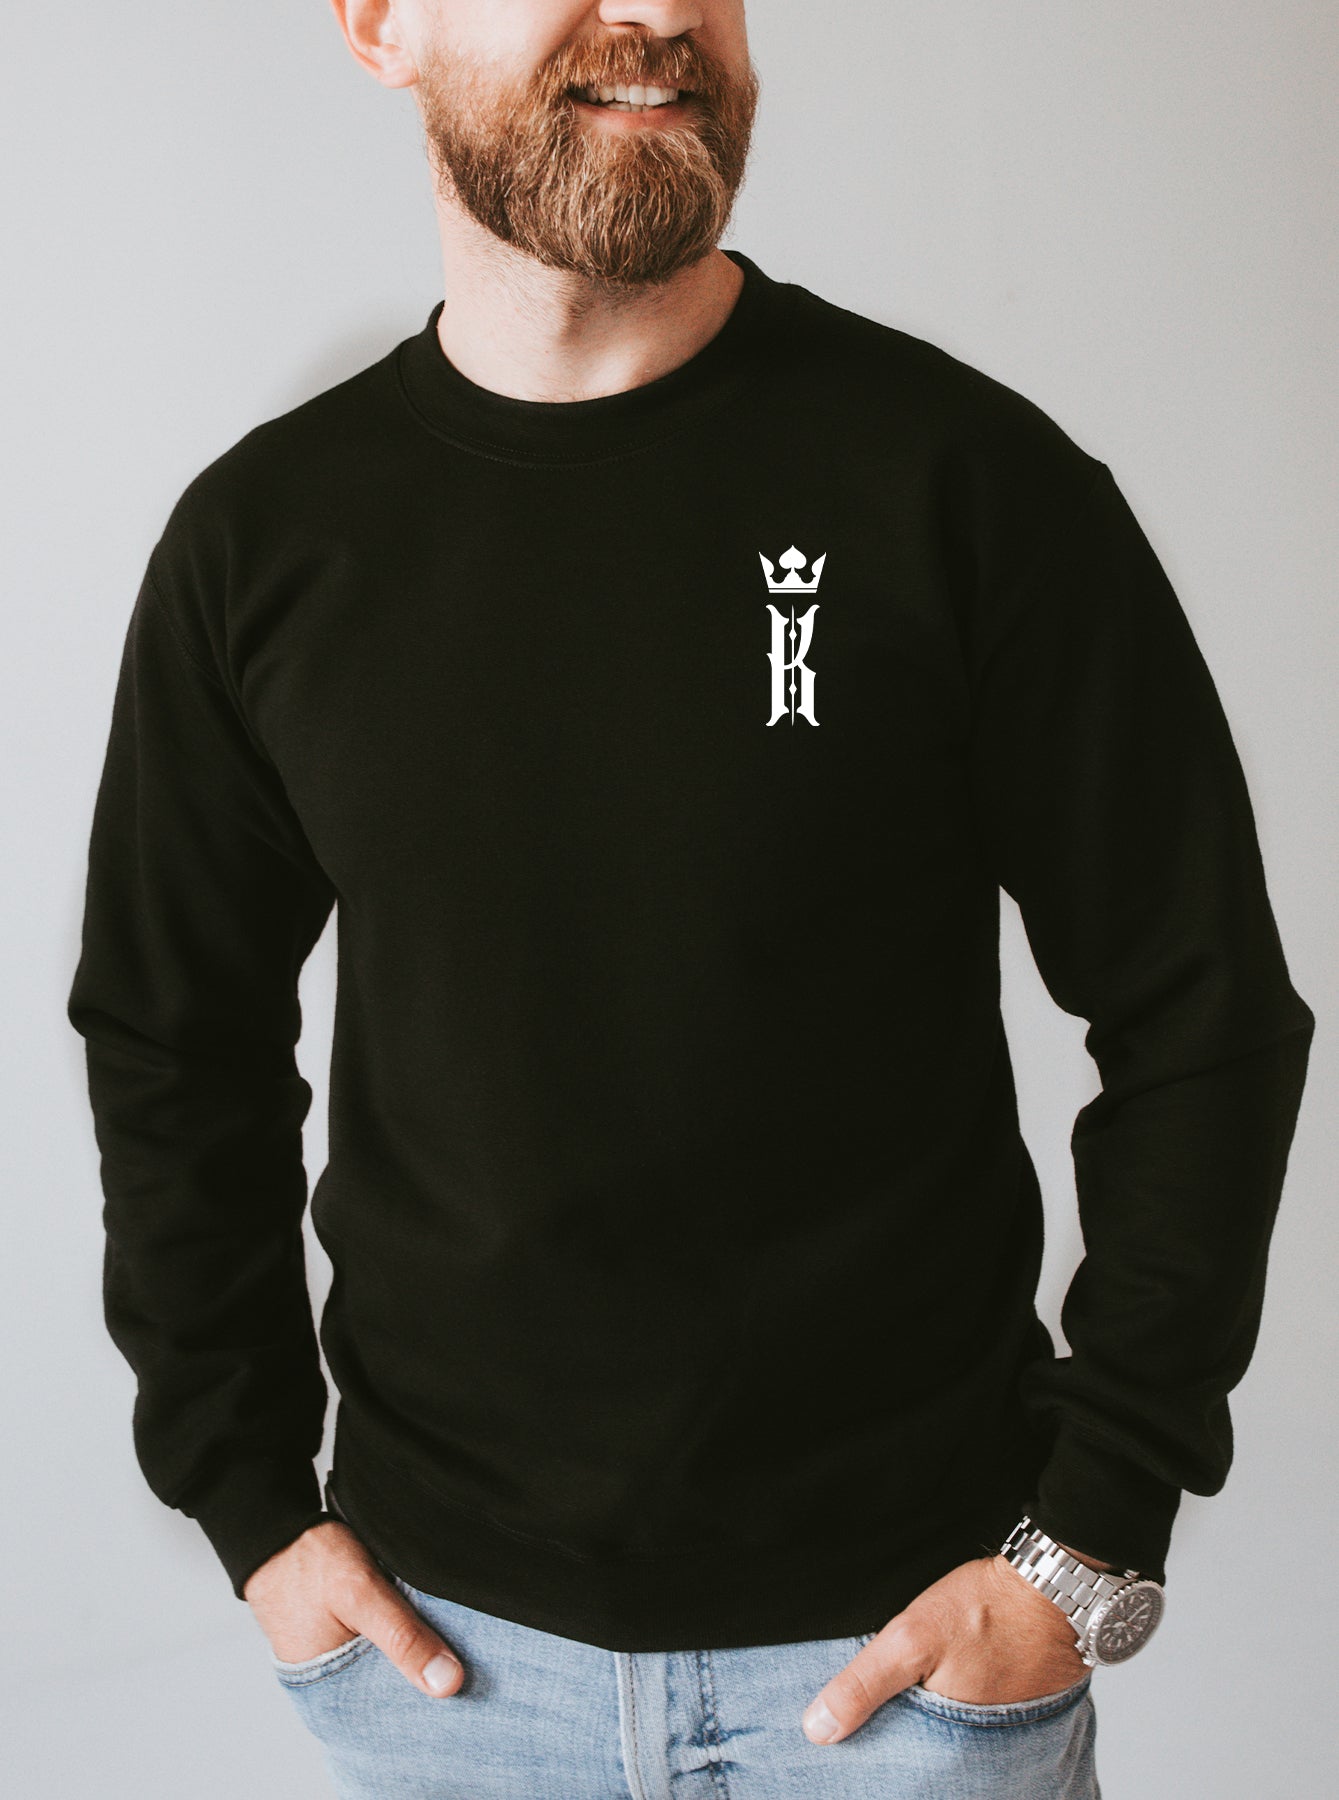 King Sweater